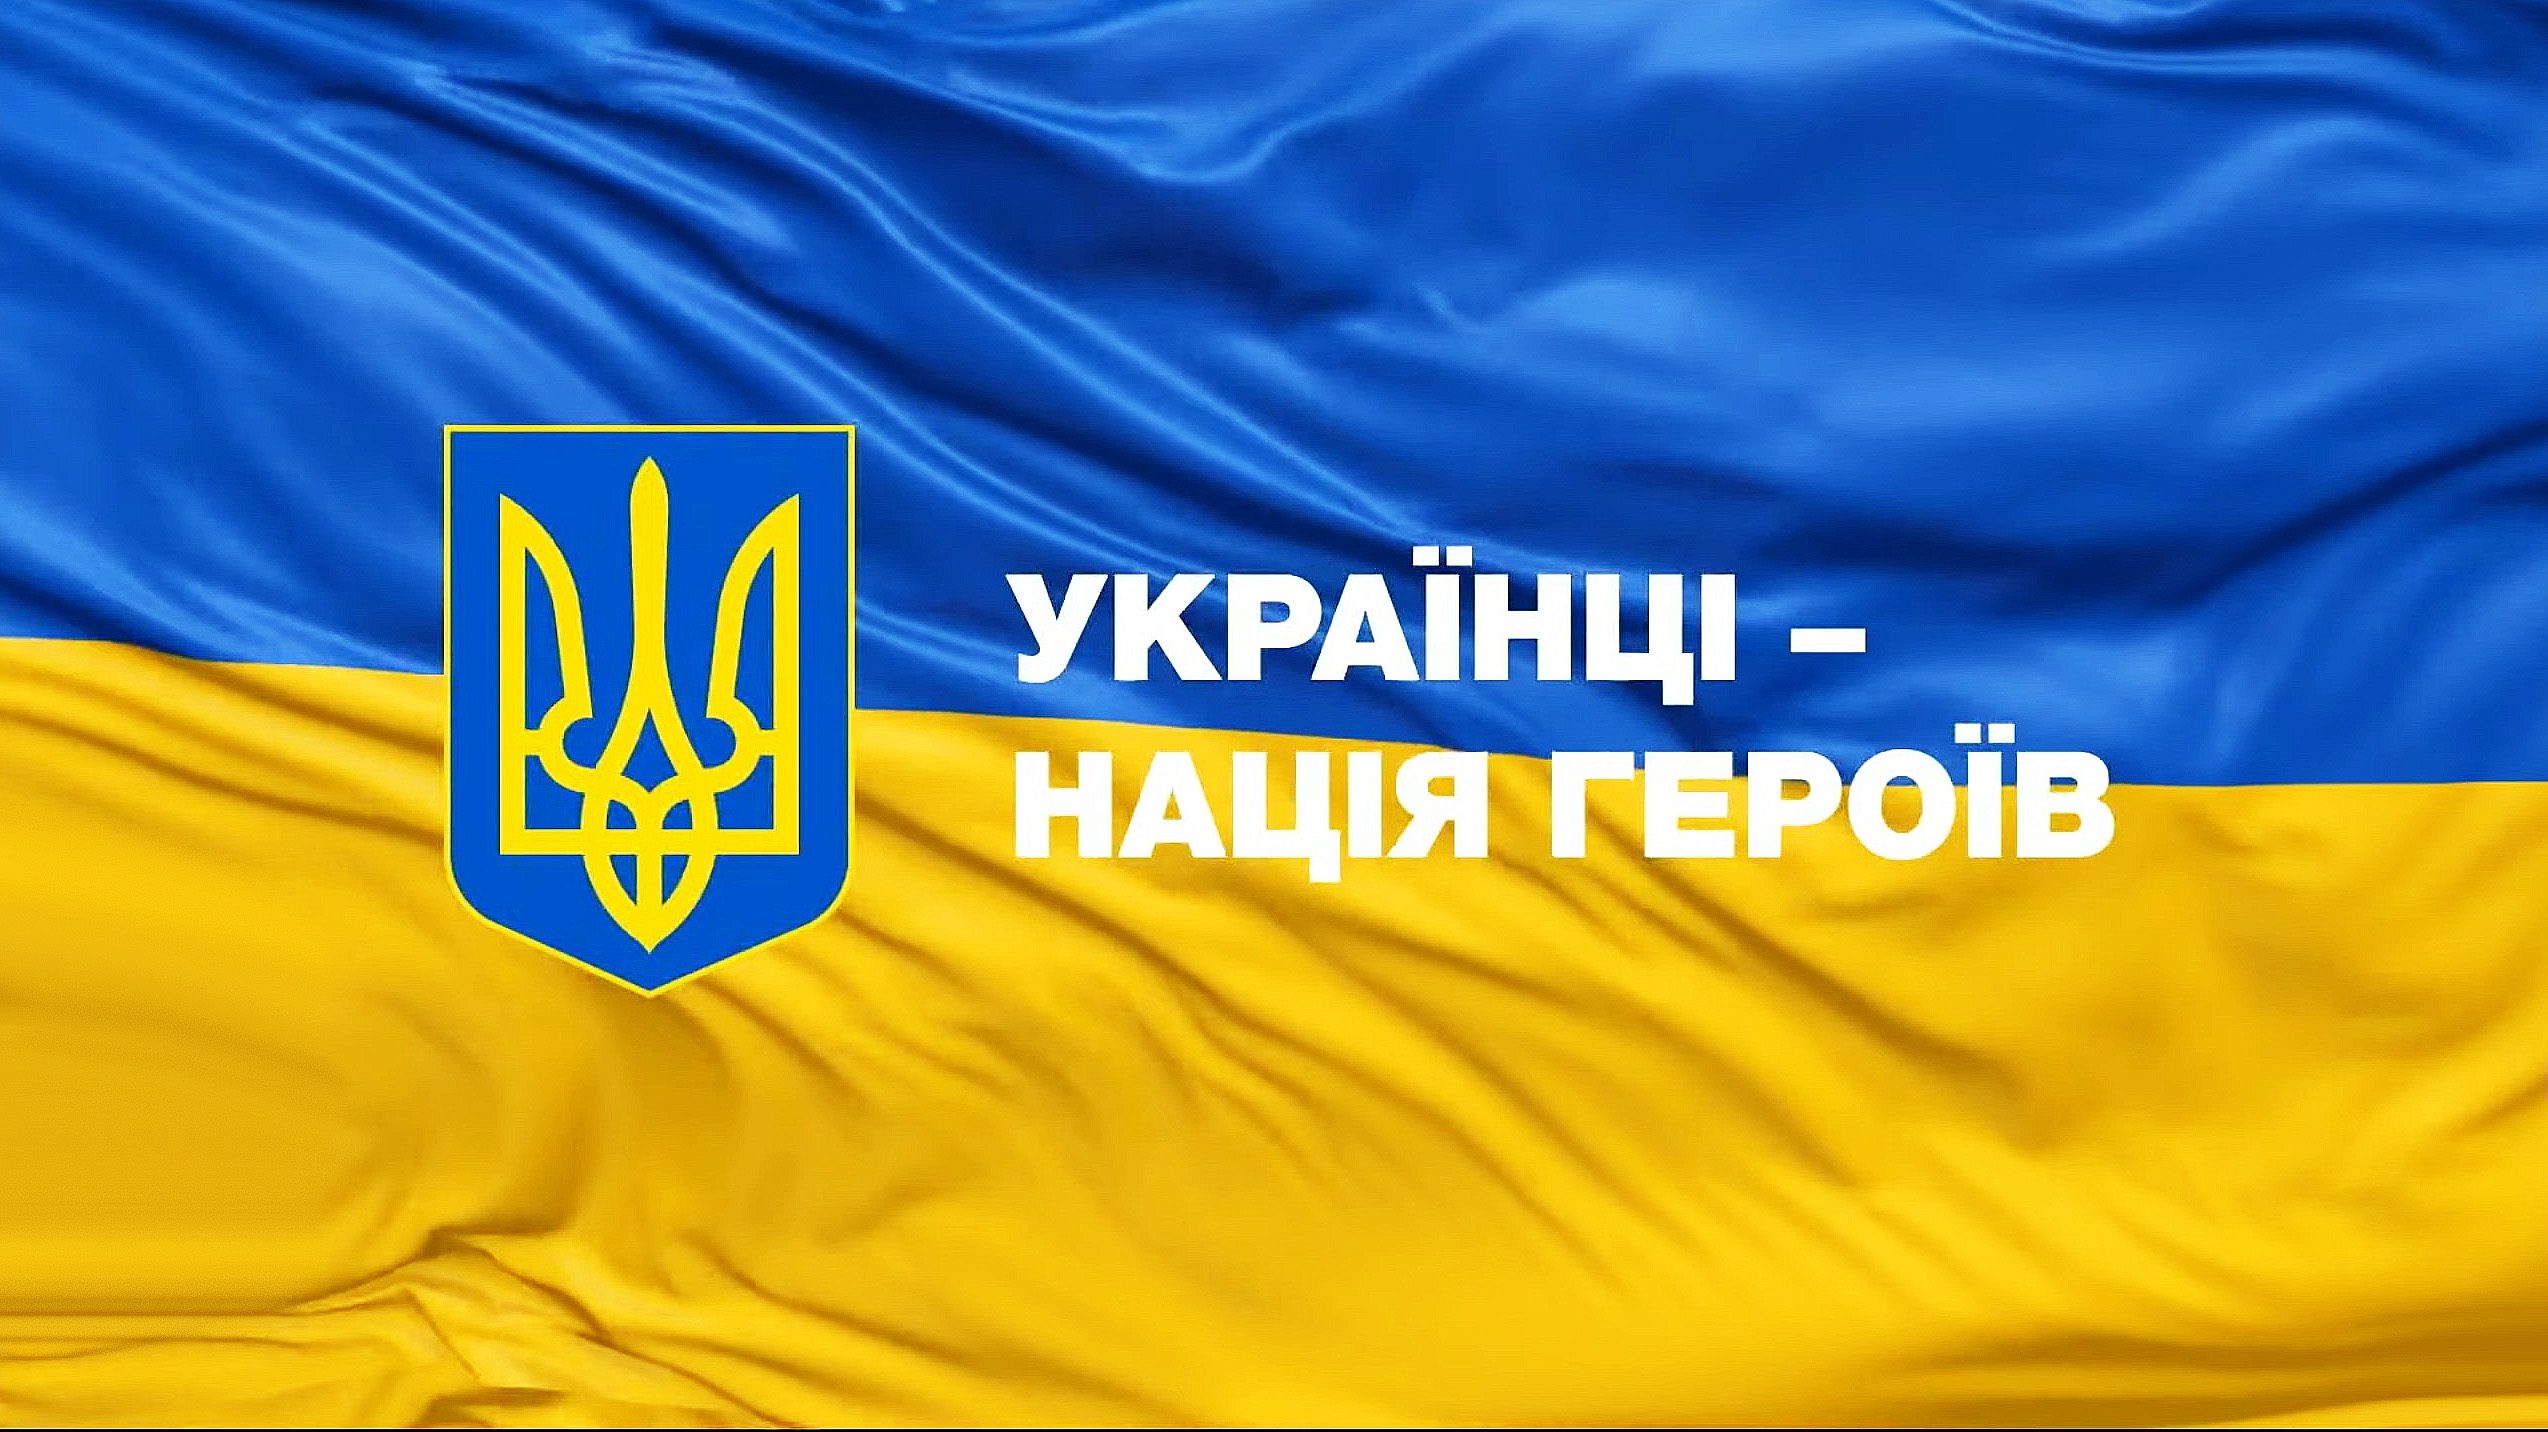 Ukrainiečiai – Didvyrių tauta! | Alkas.lt nuor.